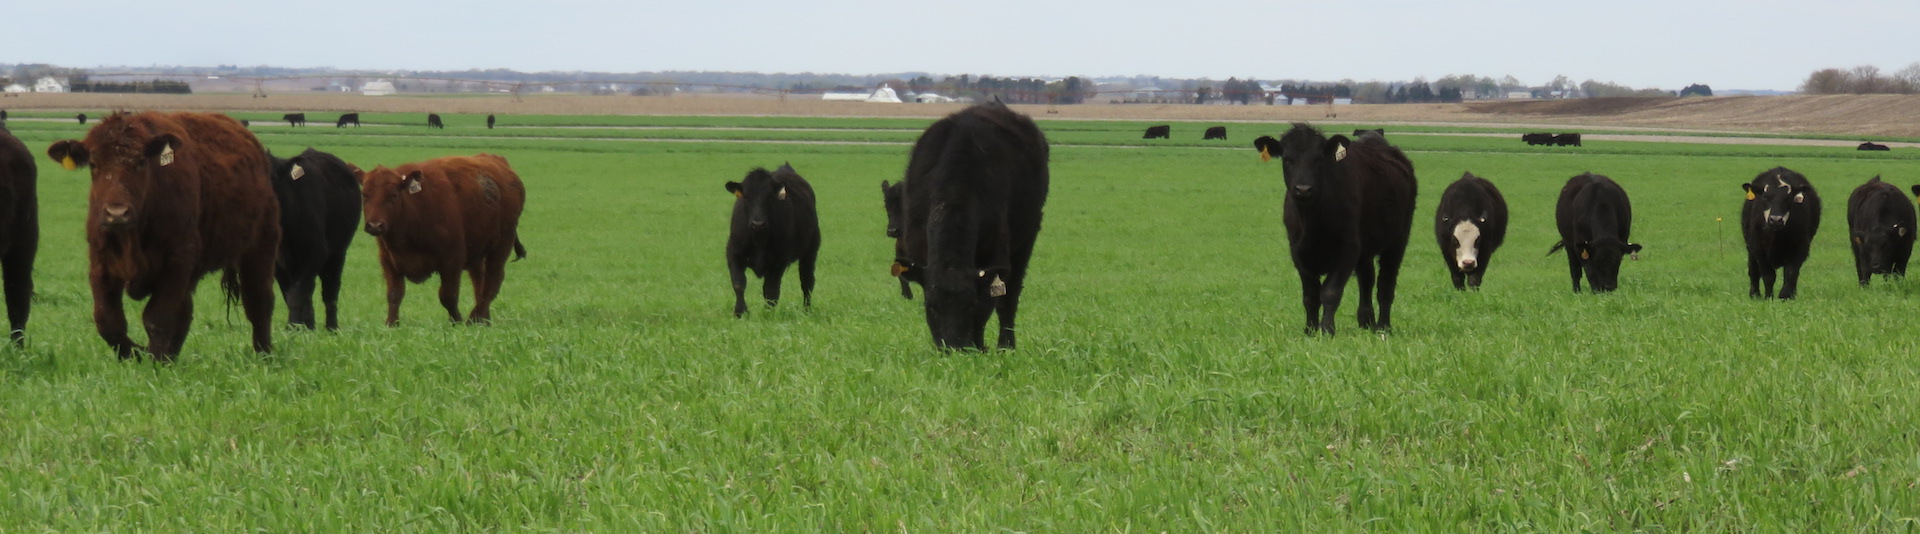 cattle feeding in a field